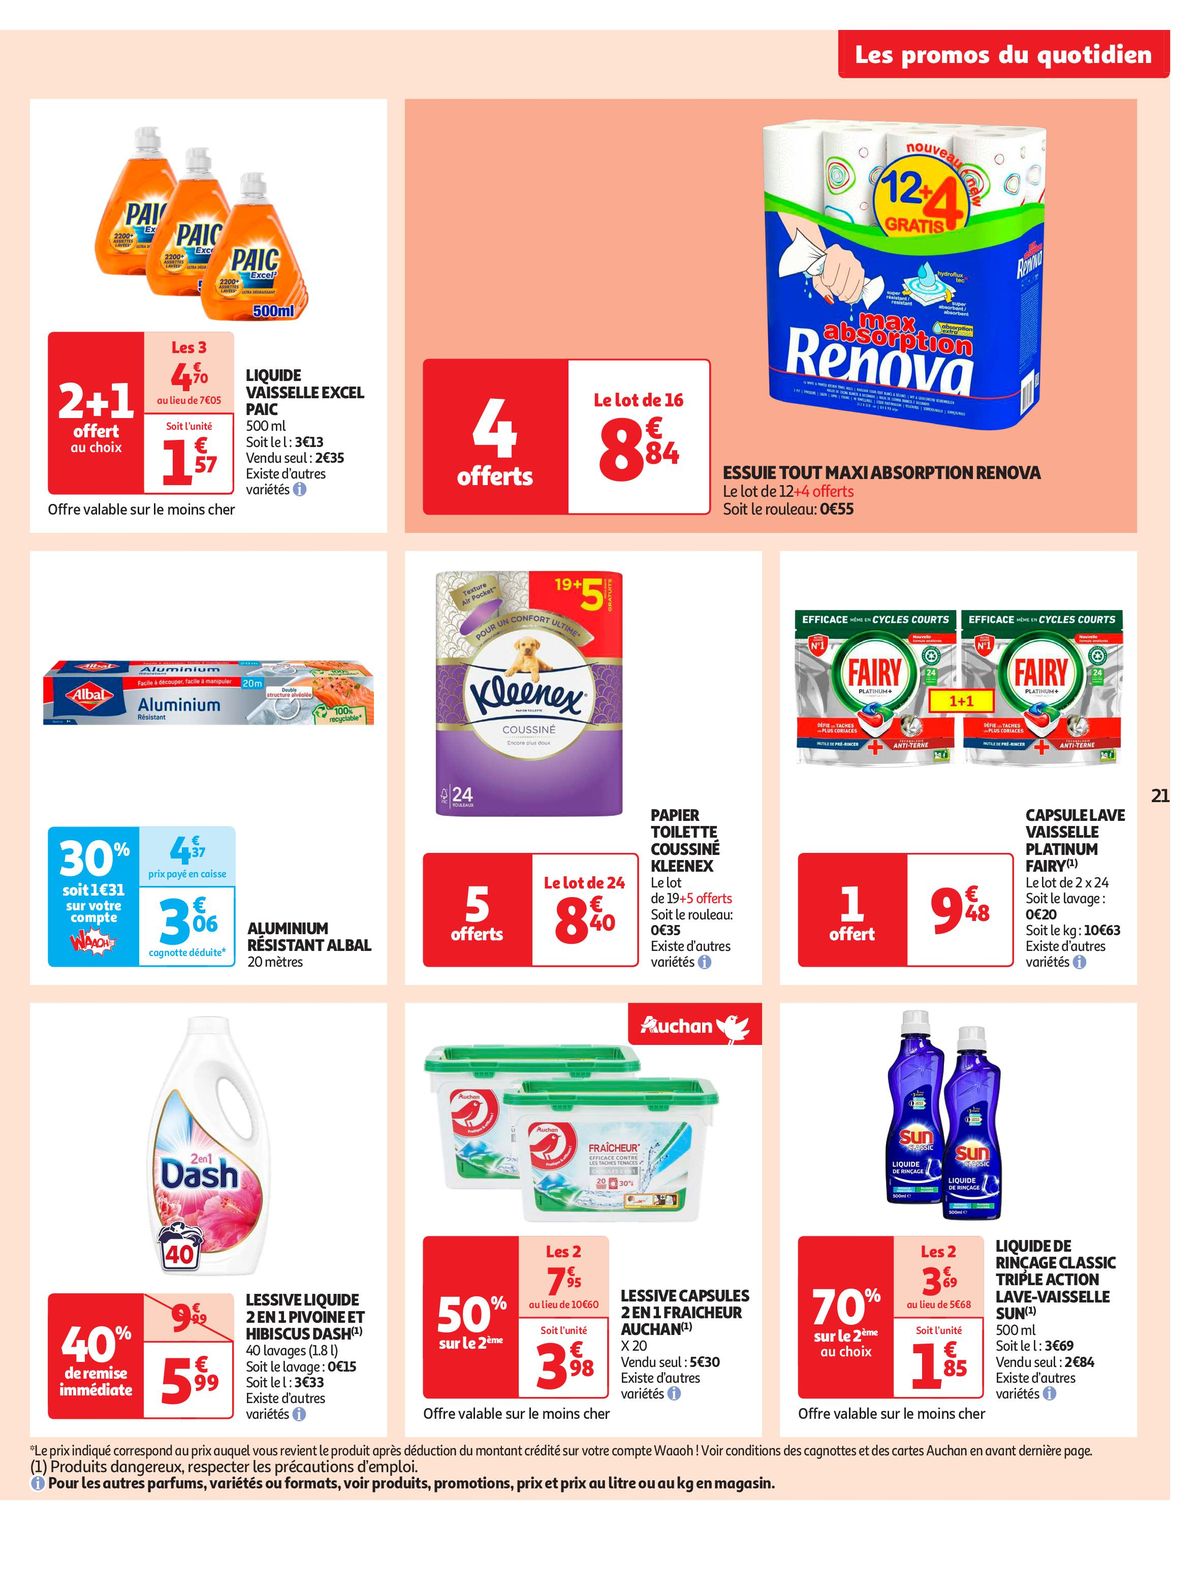 Catalogue Tout pour le réveillon dans votre supermarché, page 00021